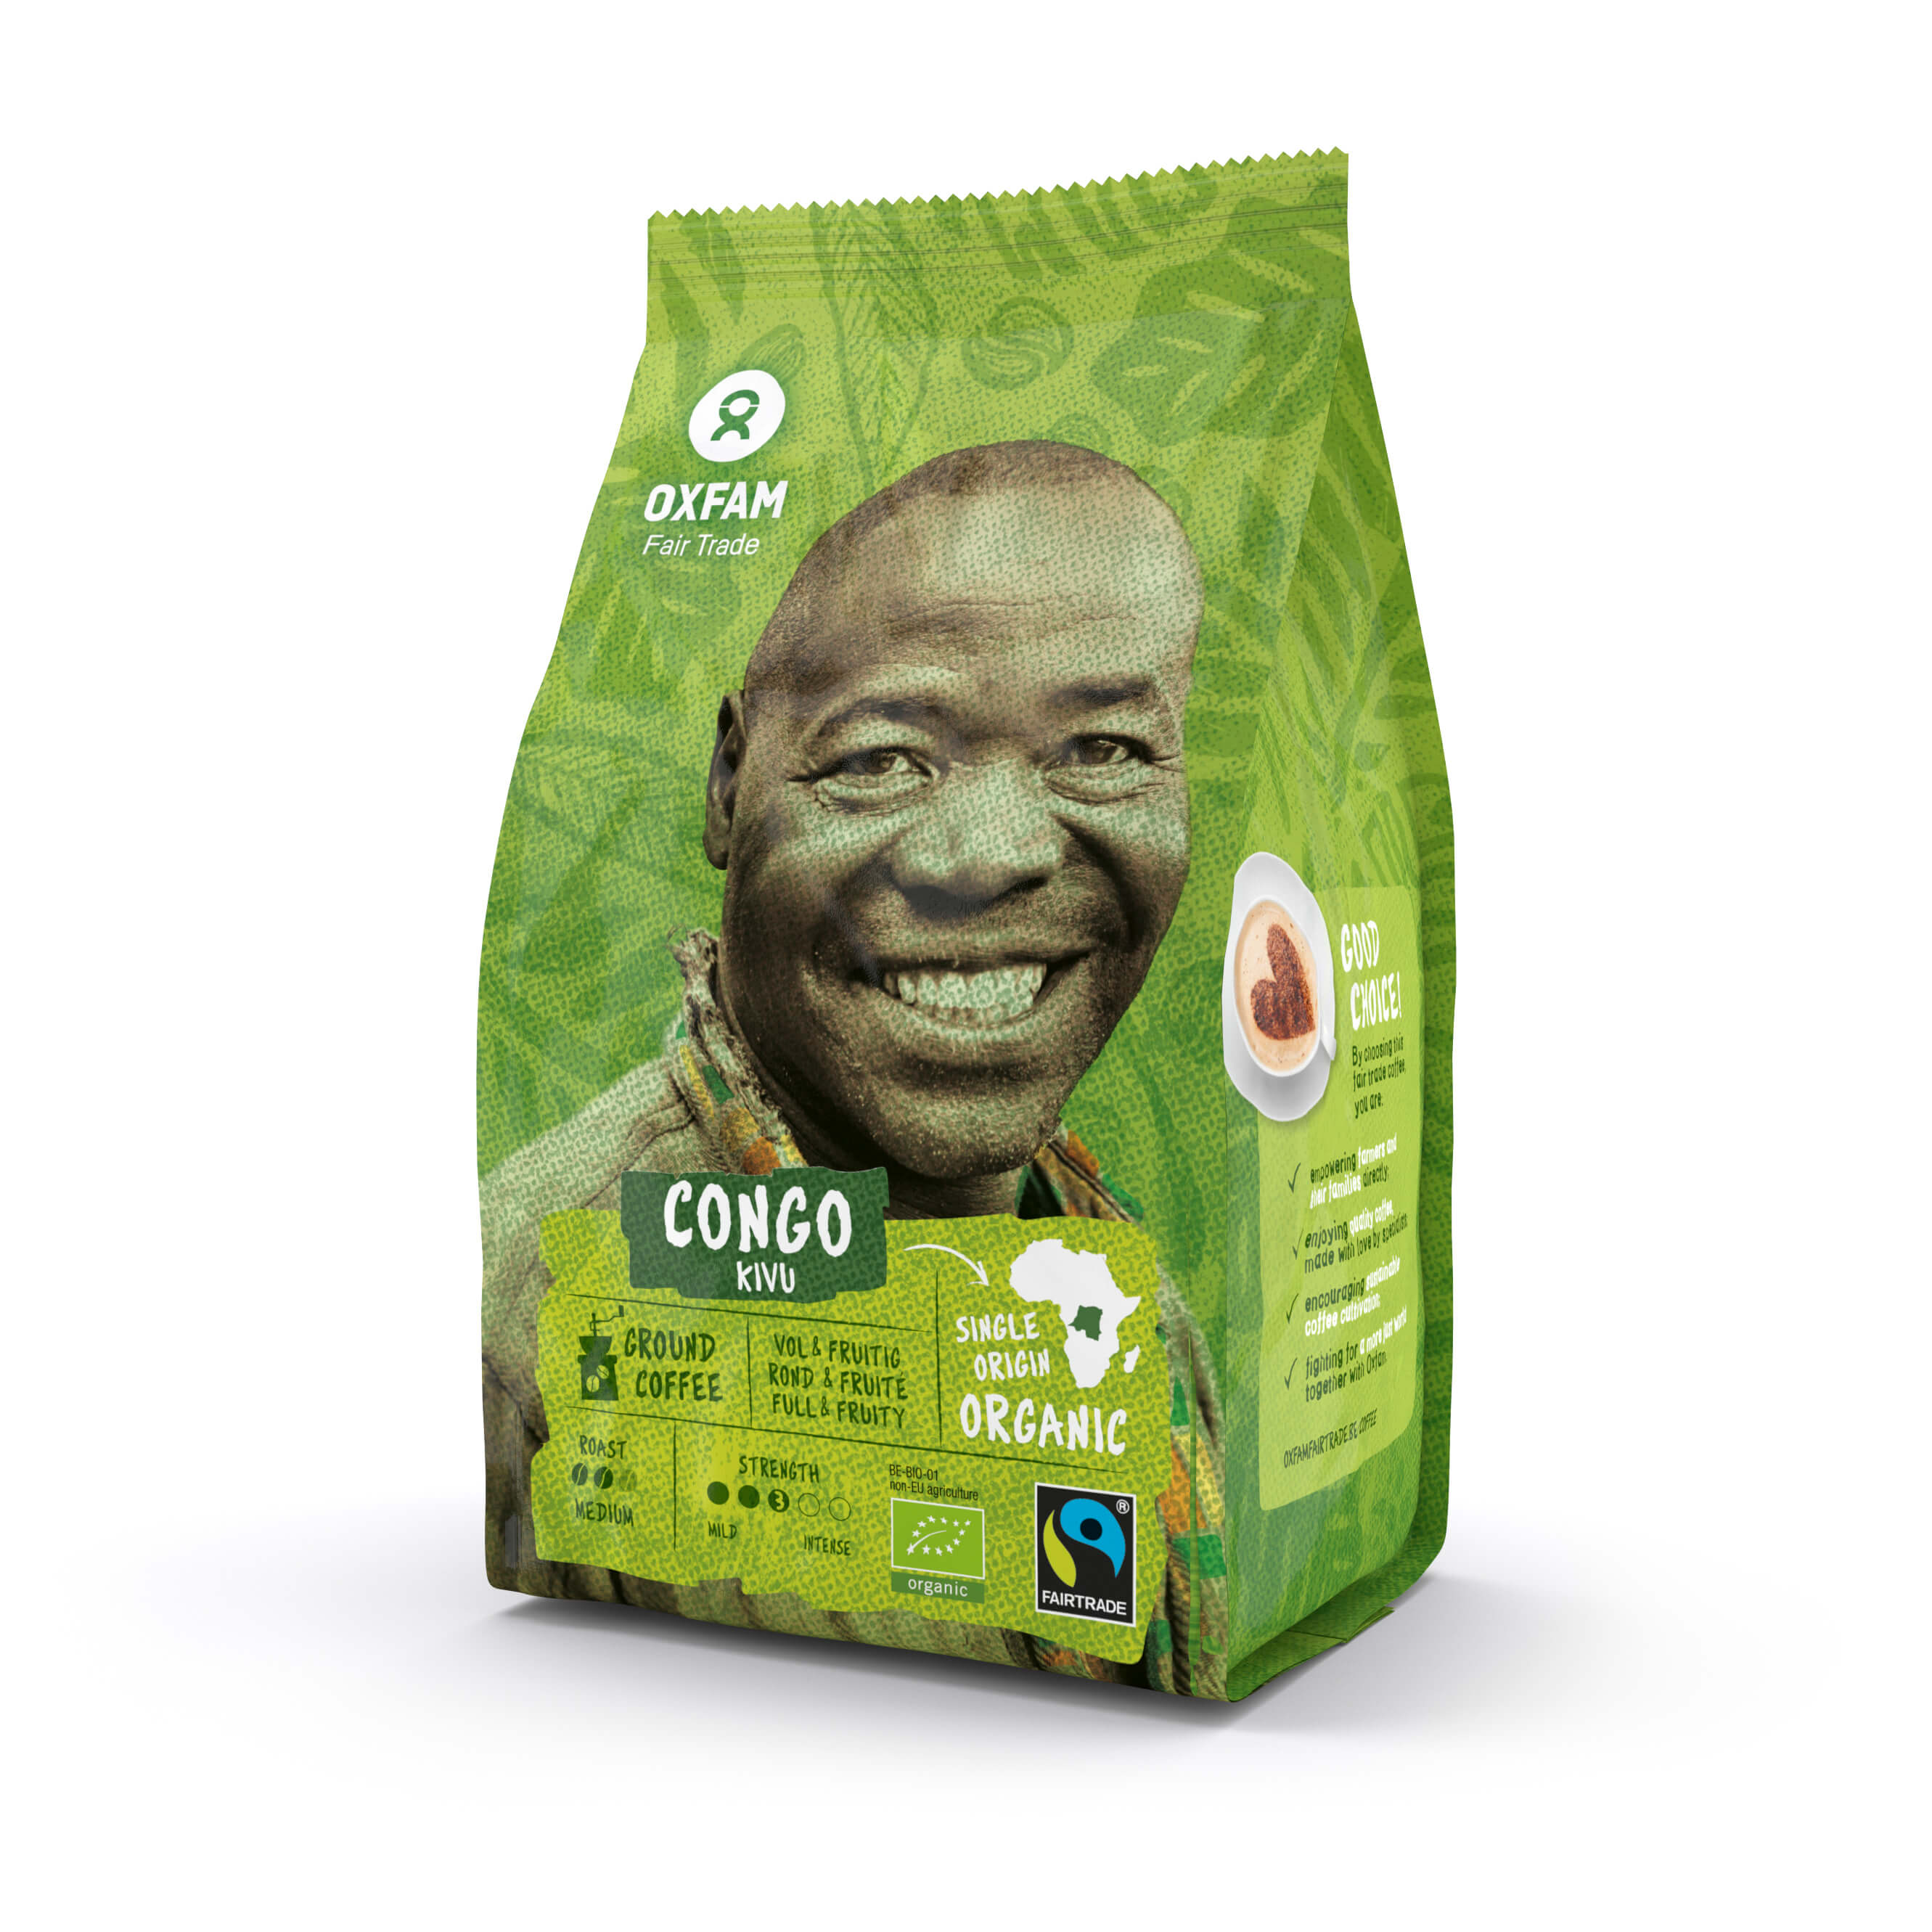 Oxfam Café moulu Congo bio 250g